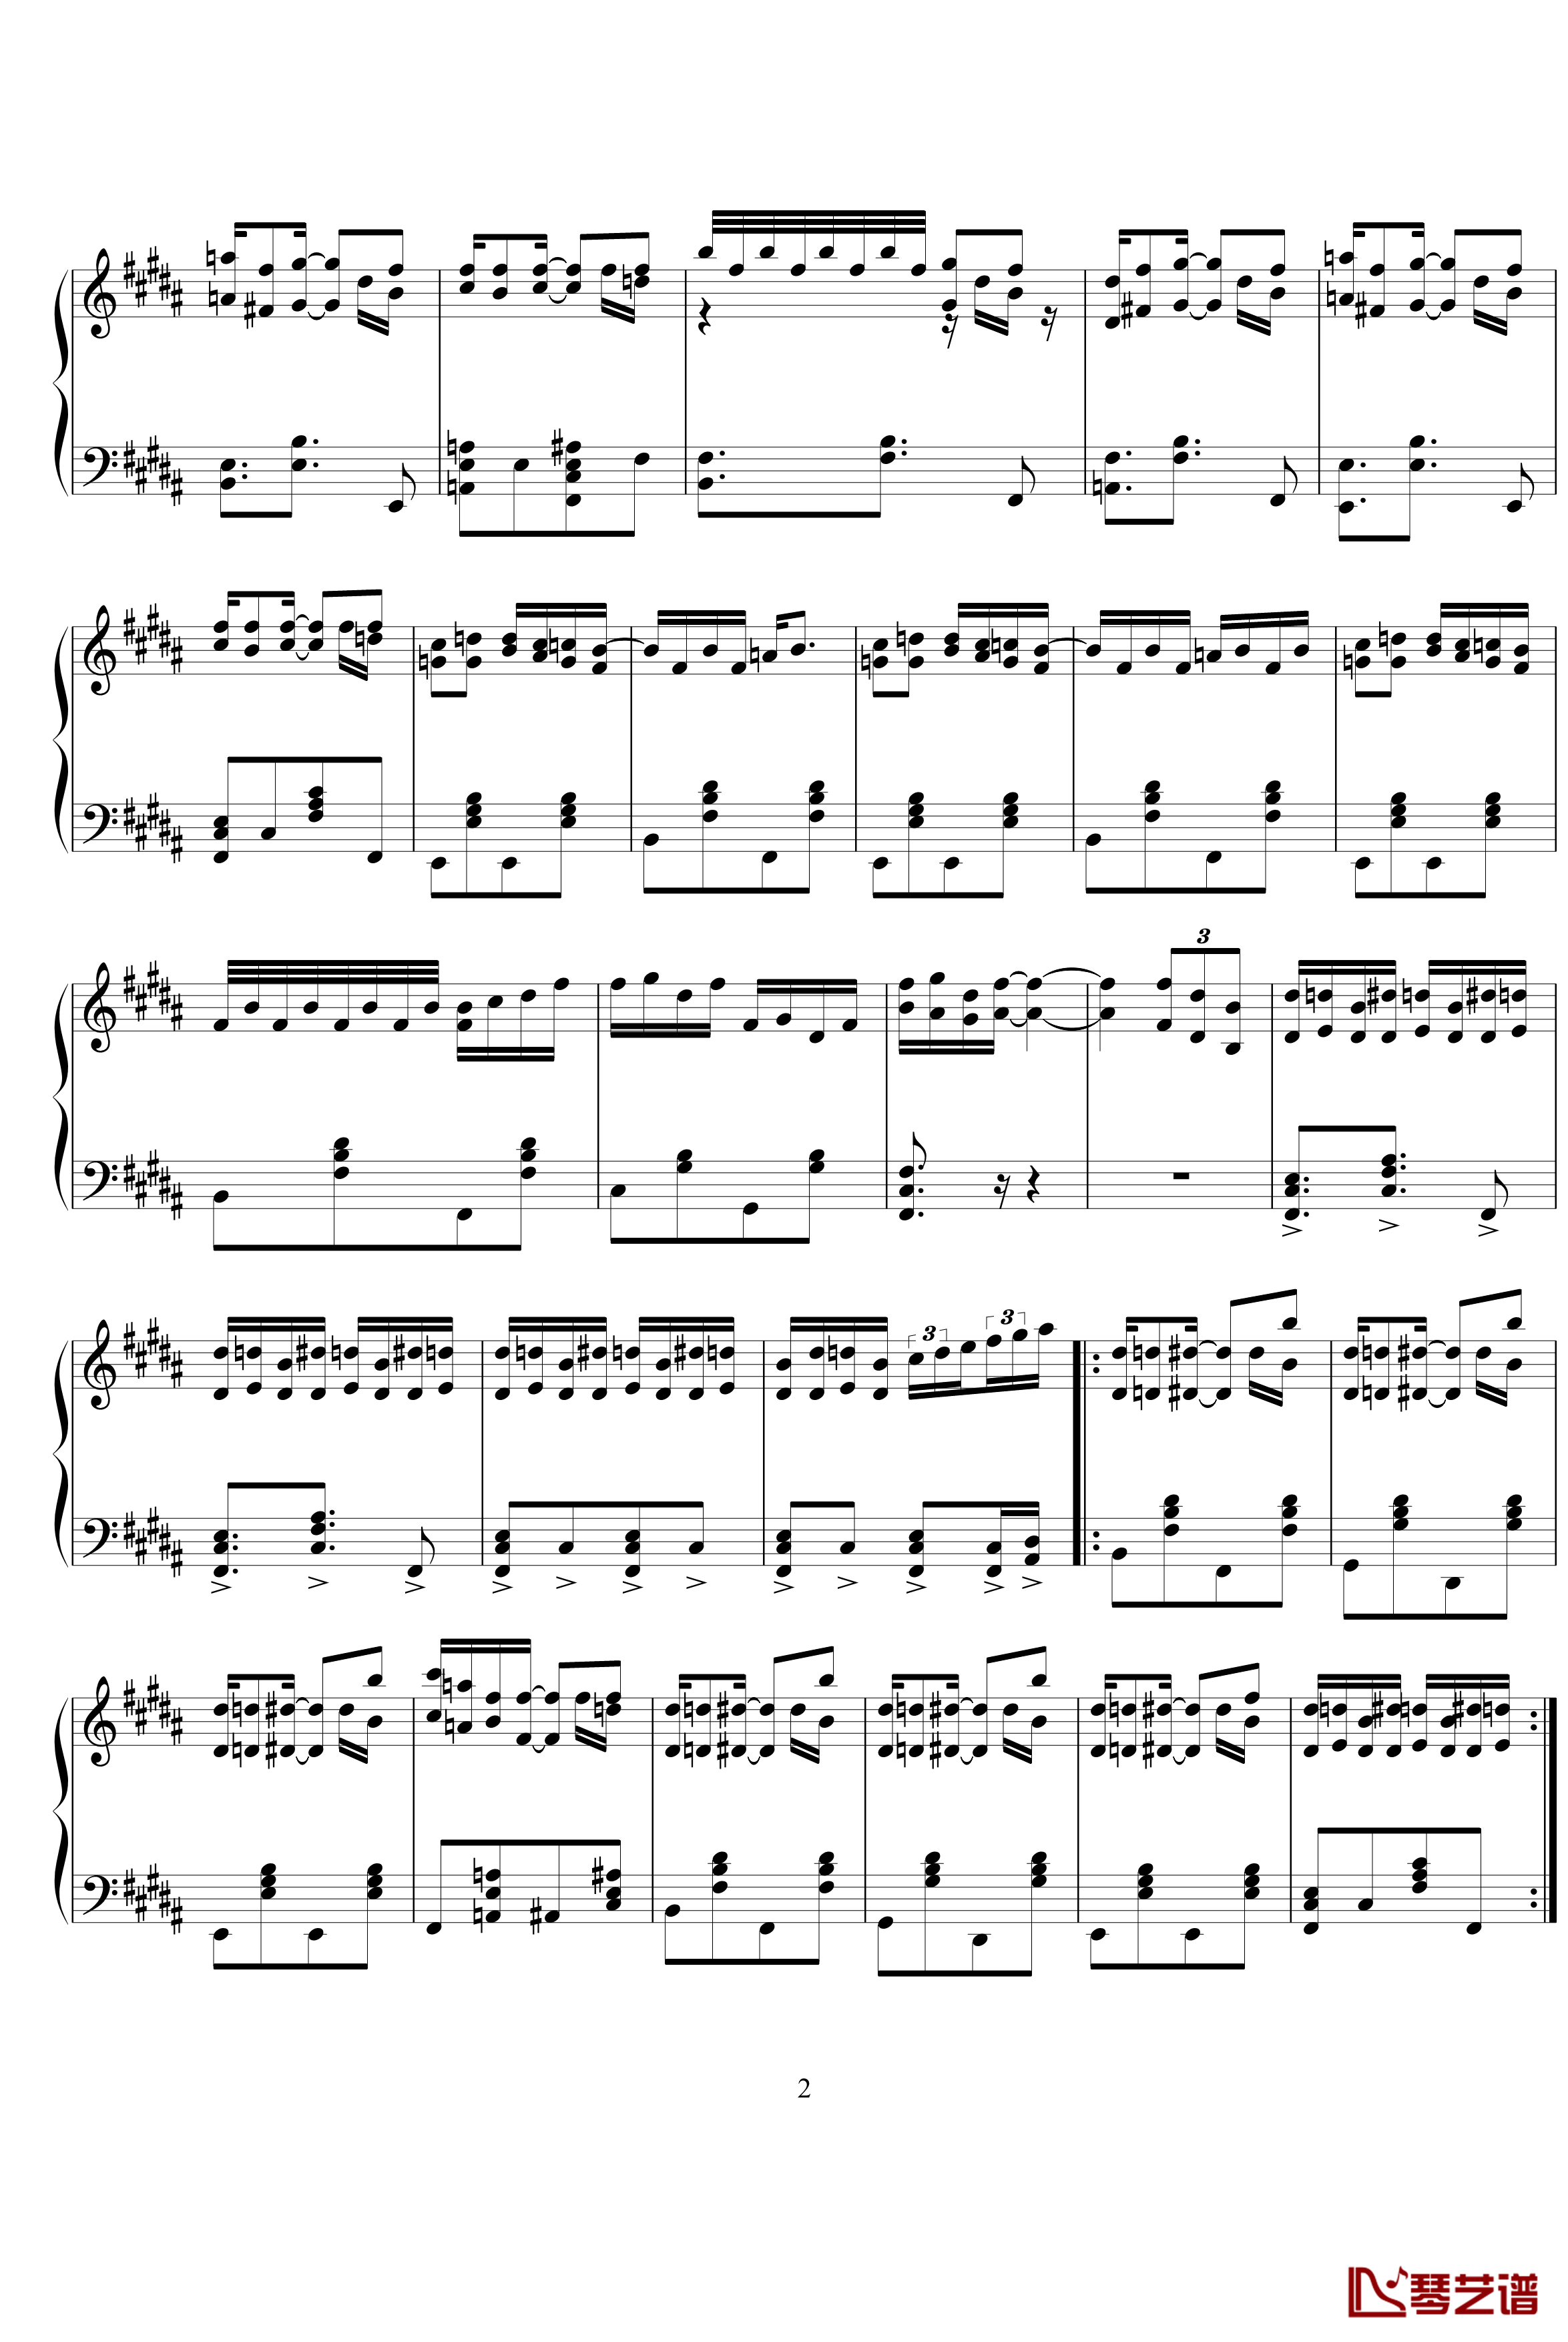 即兴爵士曲钢琴谱-leeyang521